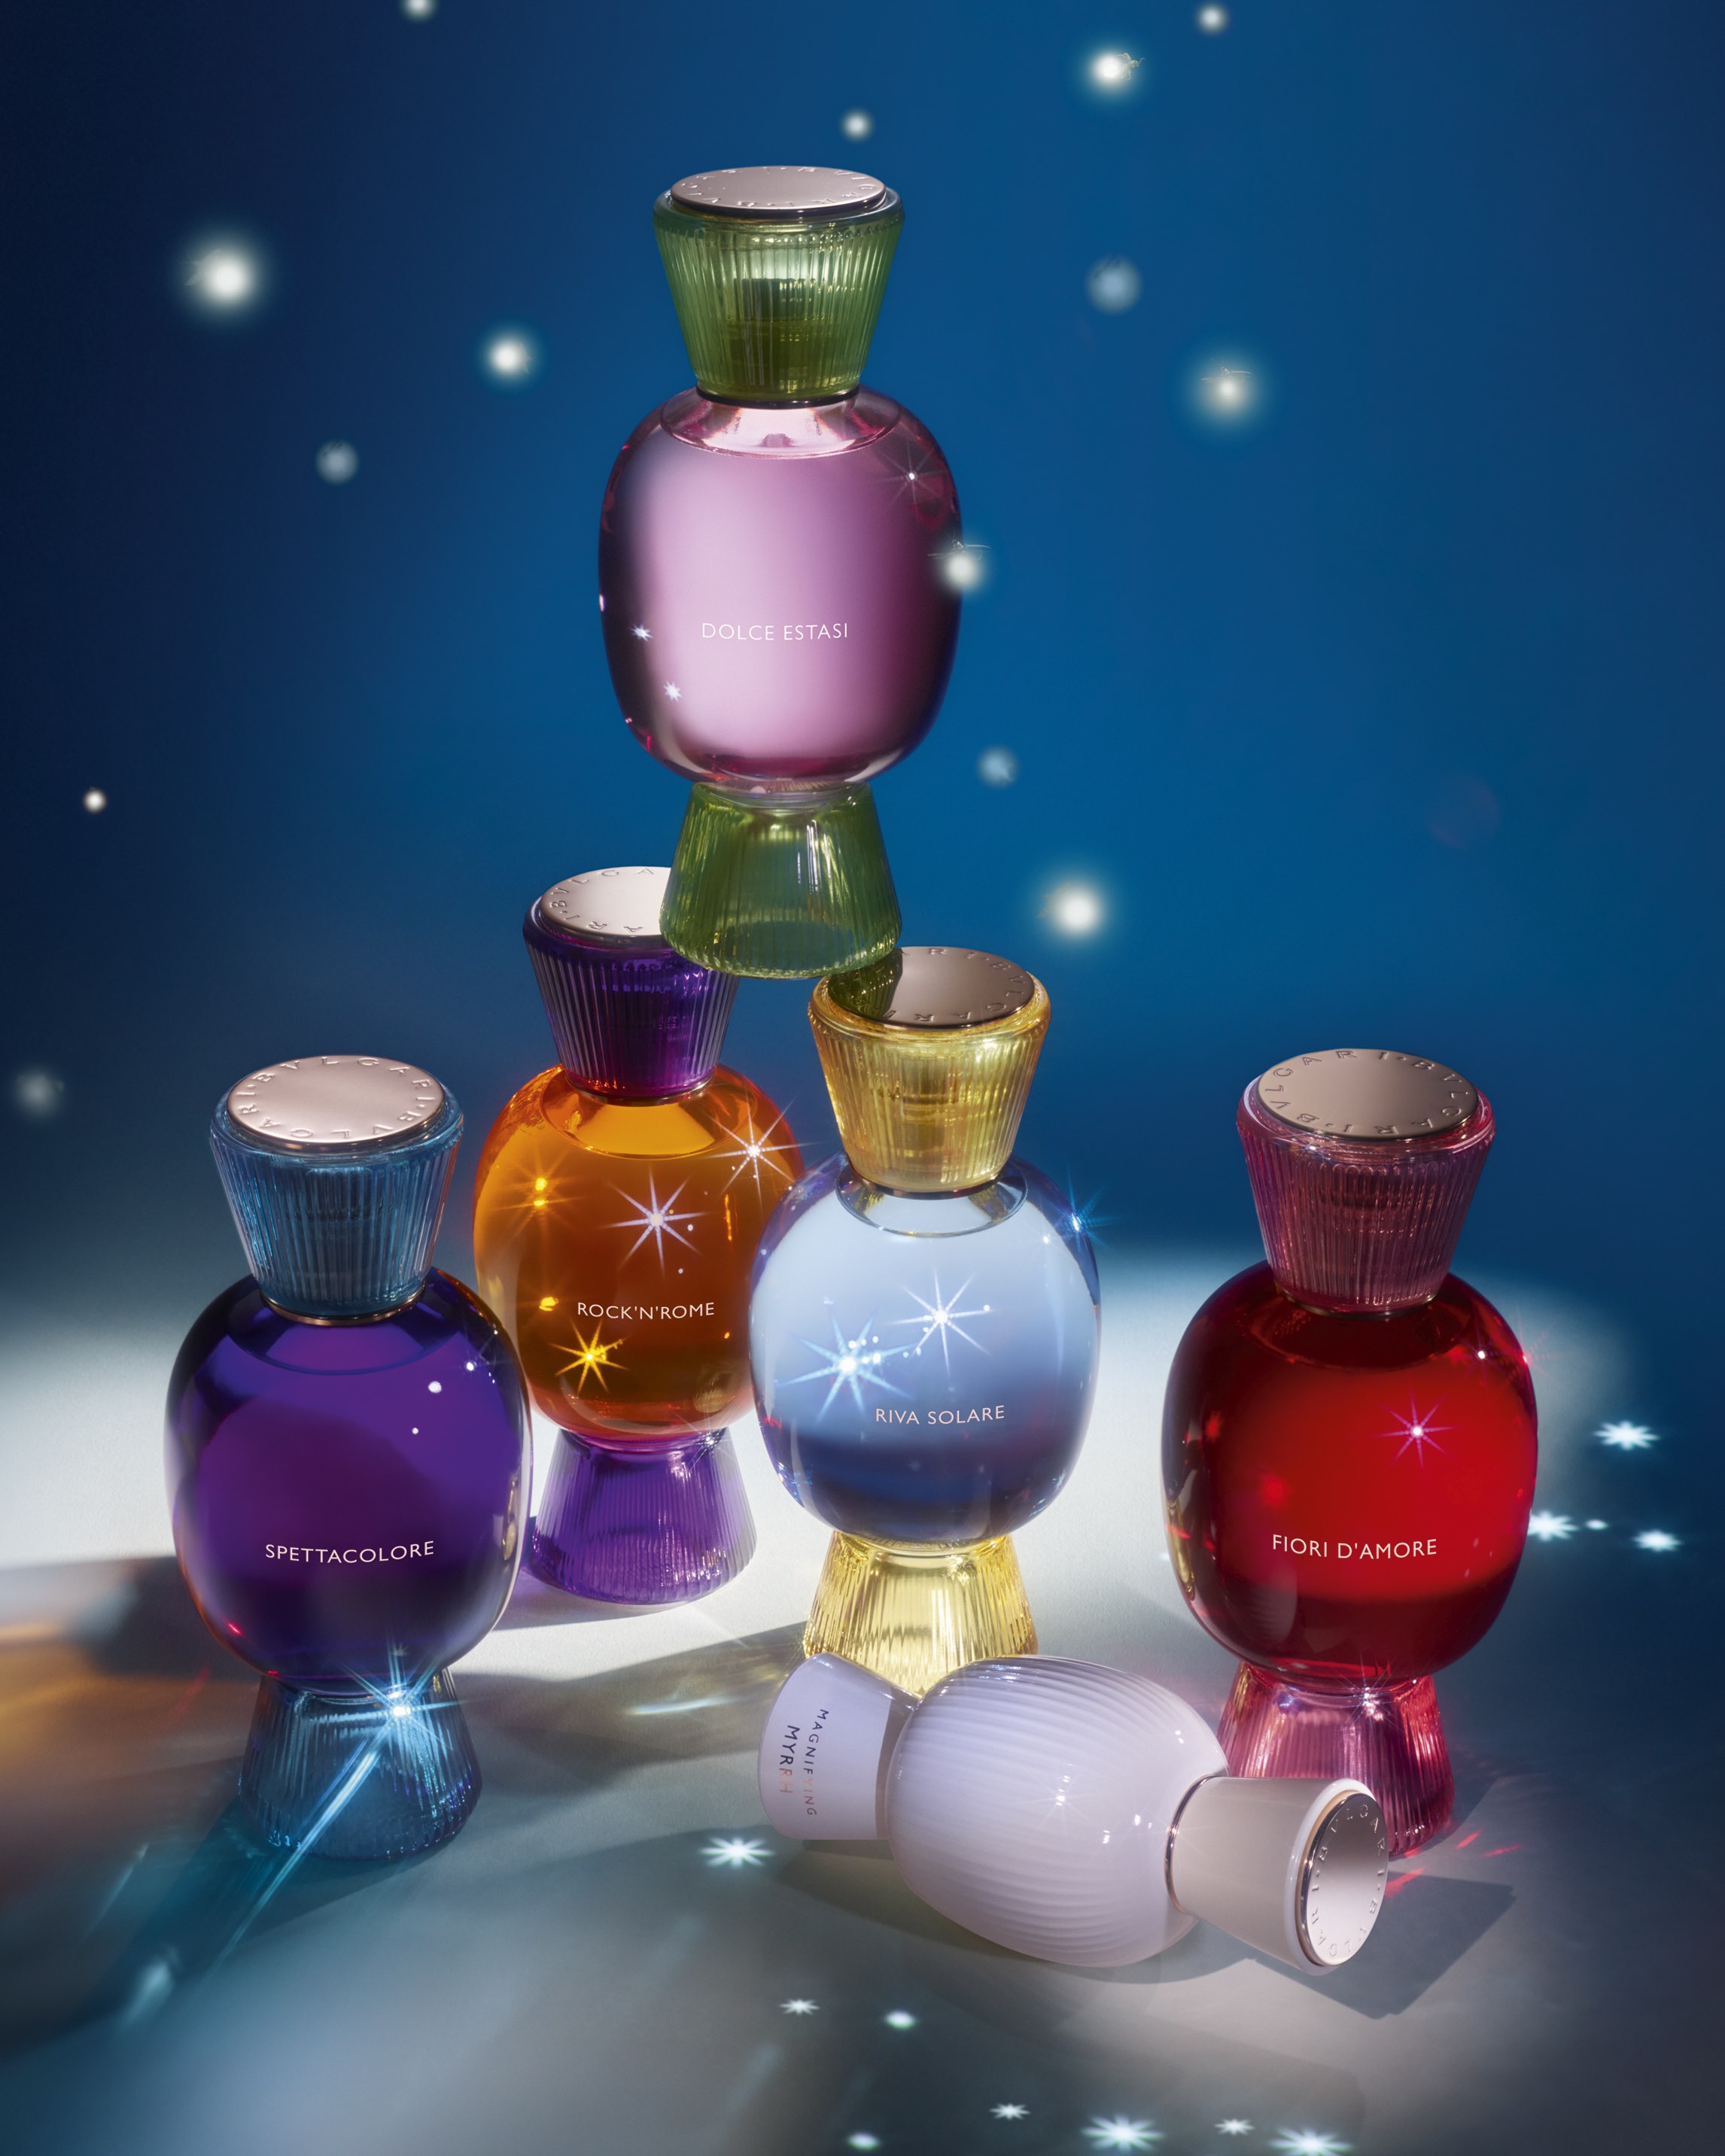 Louis Vuitton Unveils New Fragrance Collection Les Extraits - A&E